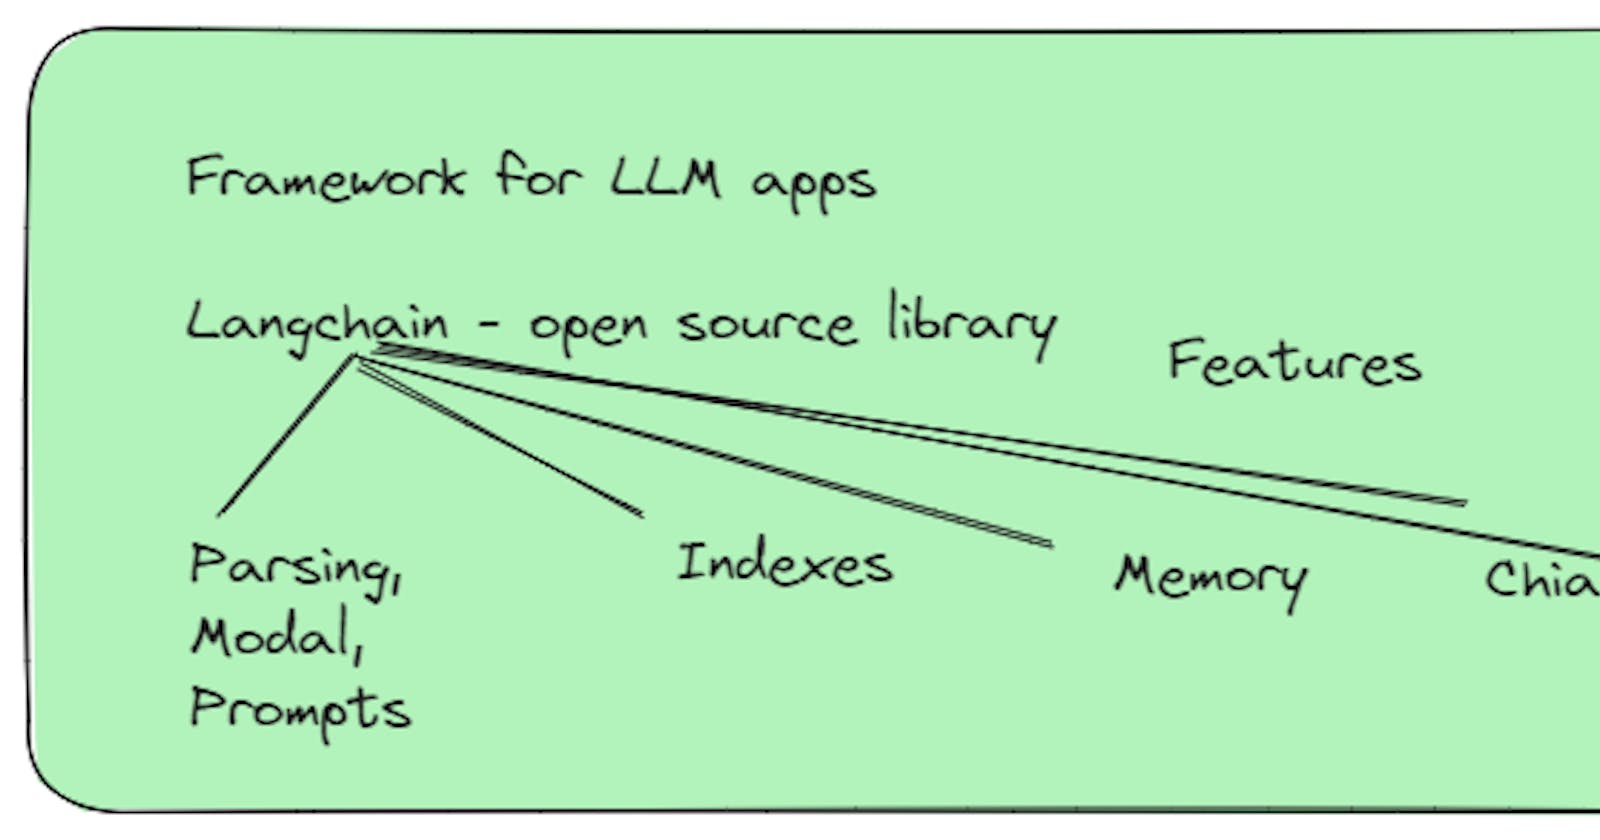 Framework for LLM apps